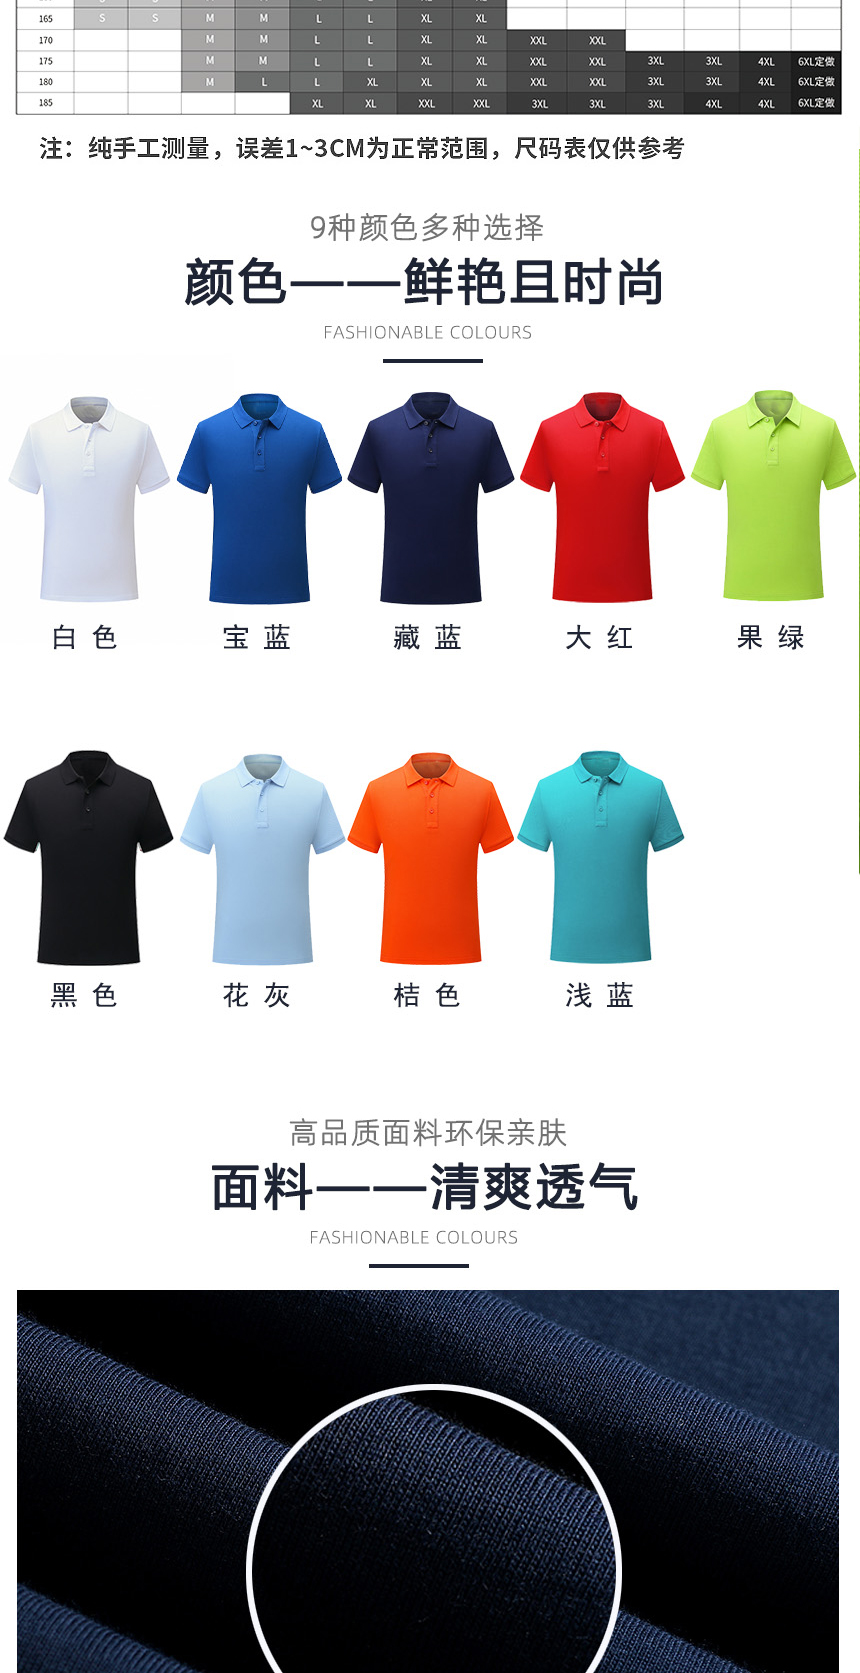 全棉T恤衫同款不同颜色款式展示，全棉T恤衫精选优质面料